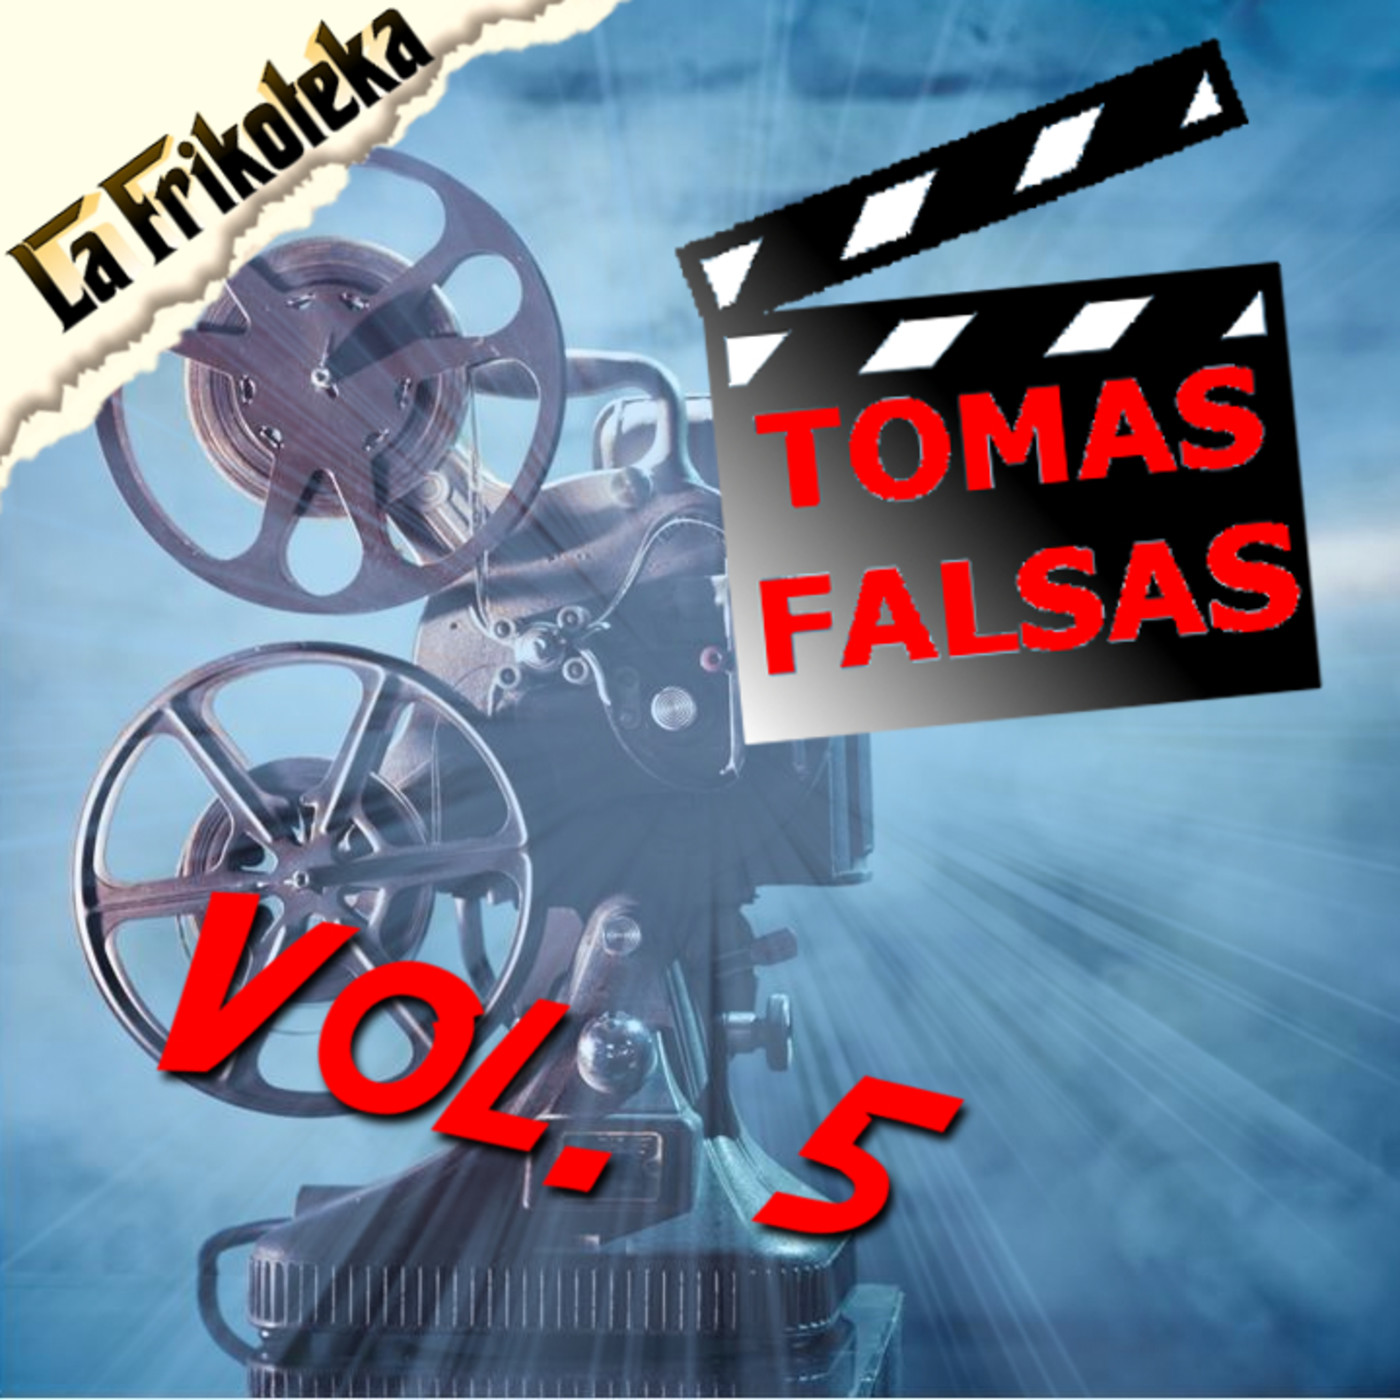 072 - Tomas falsas (Vol.5)